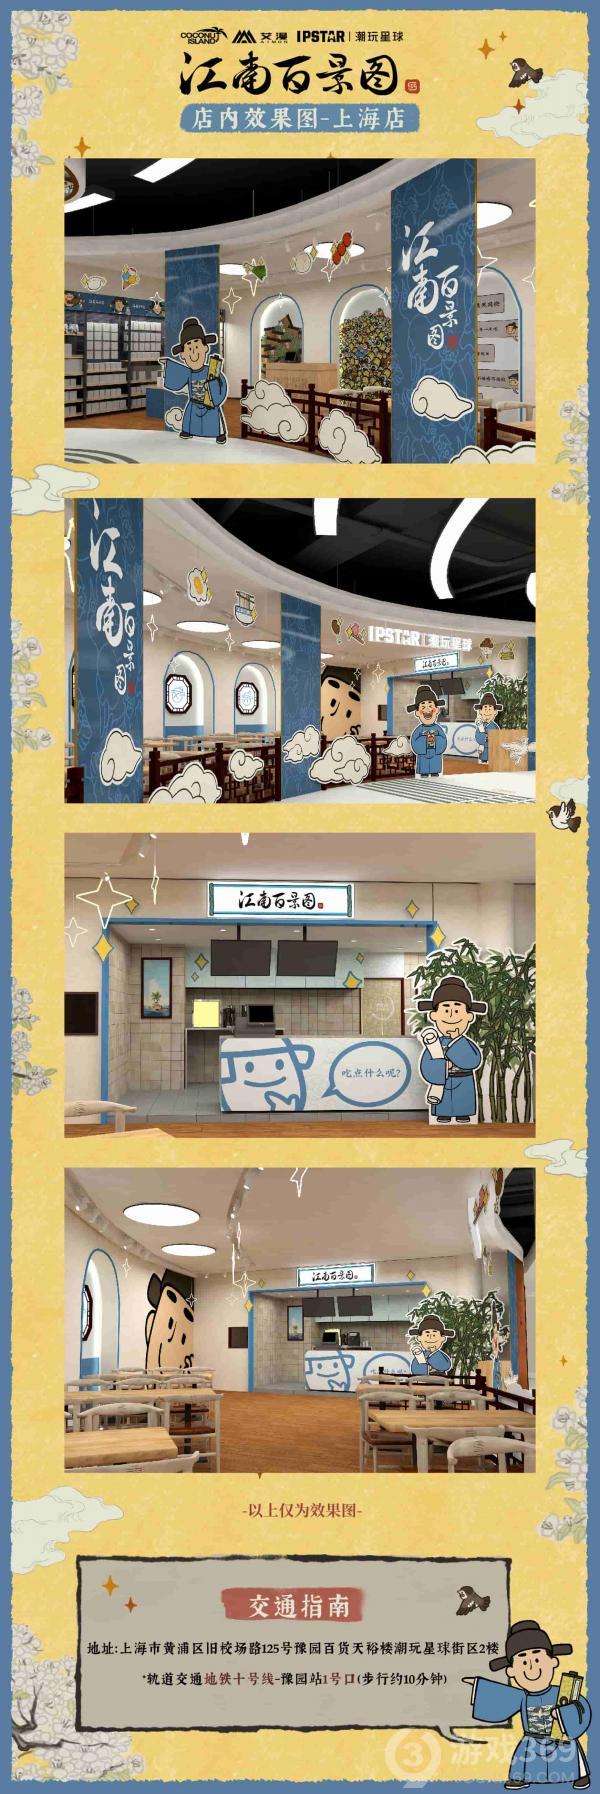 《江南百景图》授权主题餐饮店5月1日上海开业